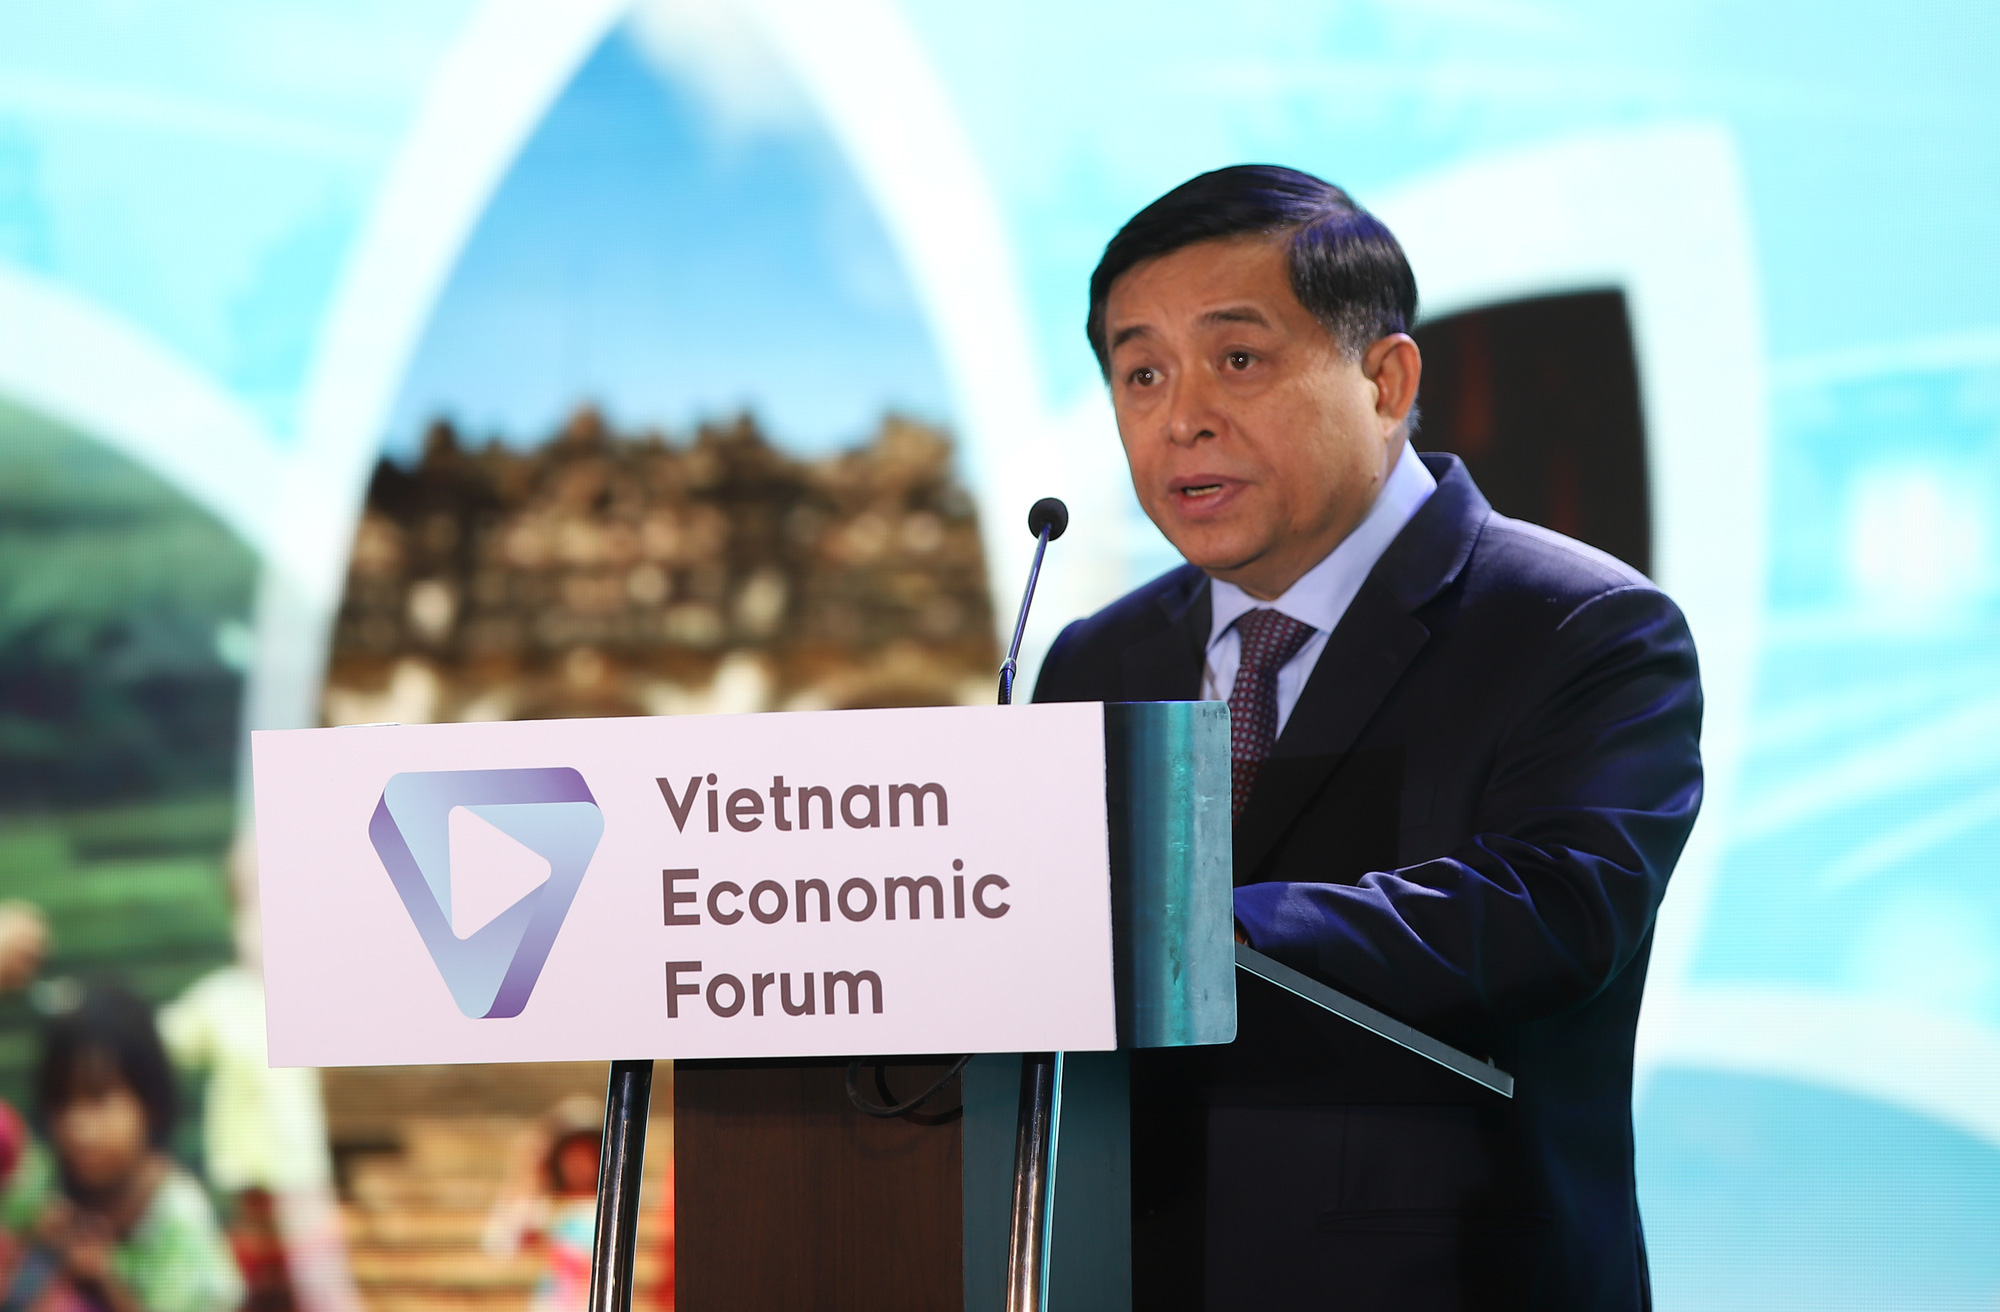 Thứ trưởng Lê Quang Tùng: “Diễn đàn Cấp cao Du lịch Việt Nam kỳ vọng sẽ tạo ra một làn gió mới cho ngành Du lịch” - Ảnh 3.